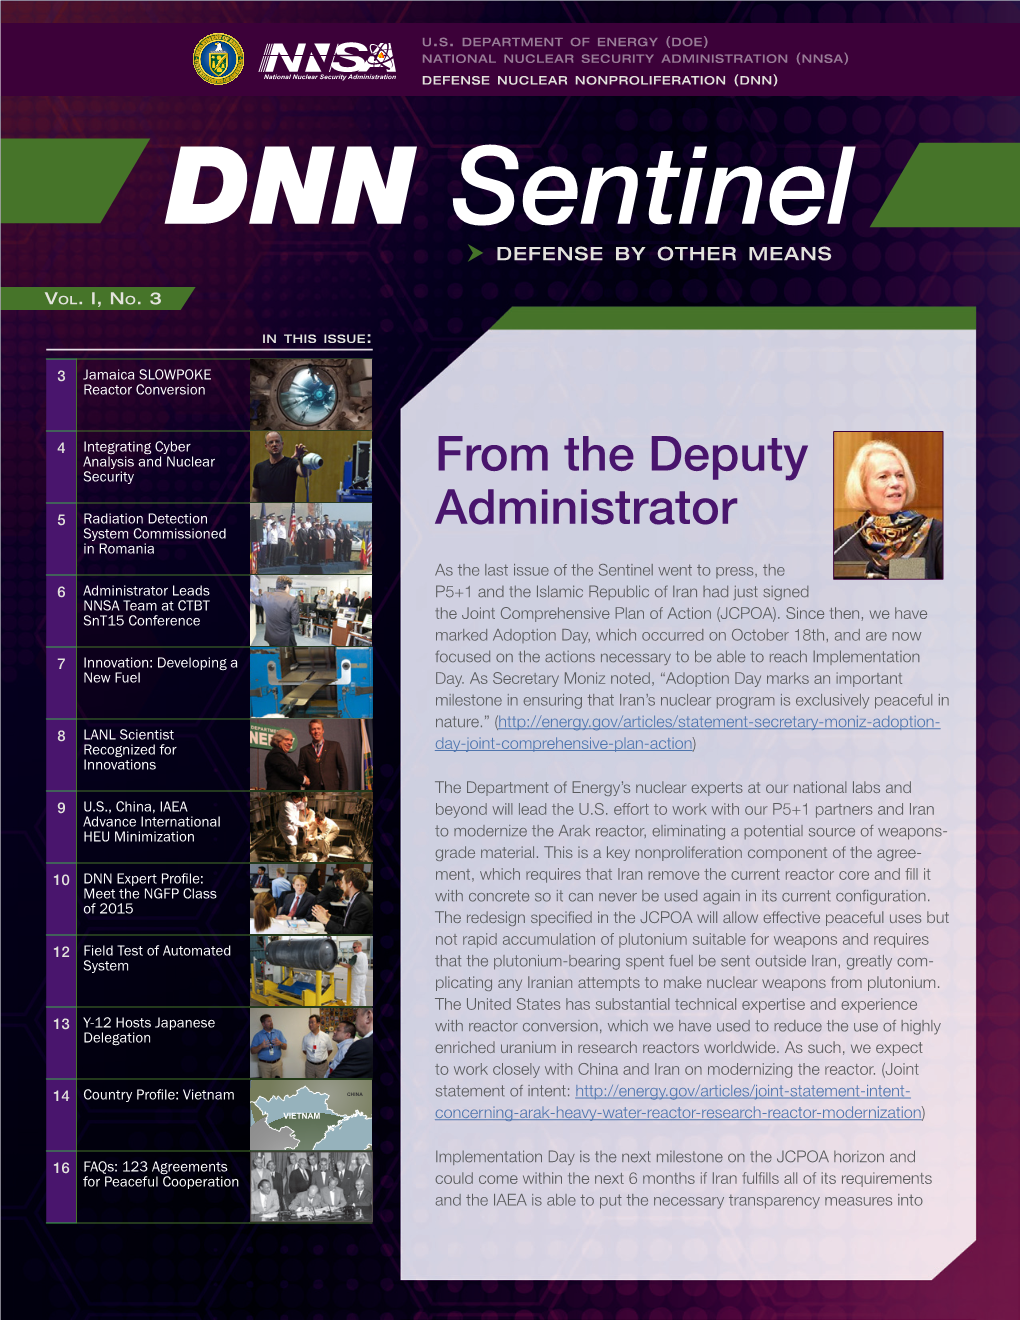 NNSA's DNN Sentinel Volume I, No. 3 and Addendum